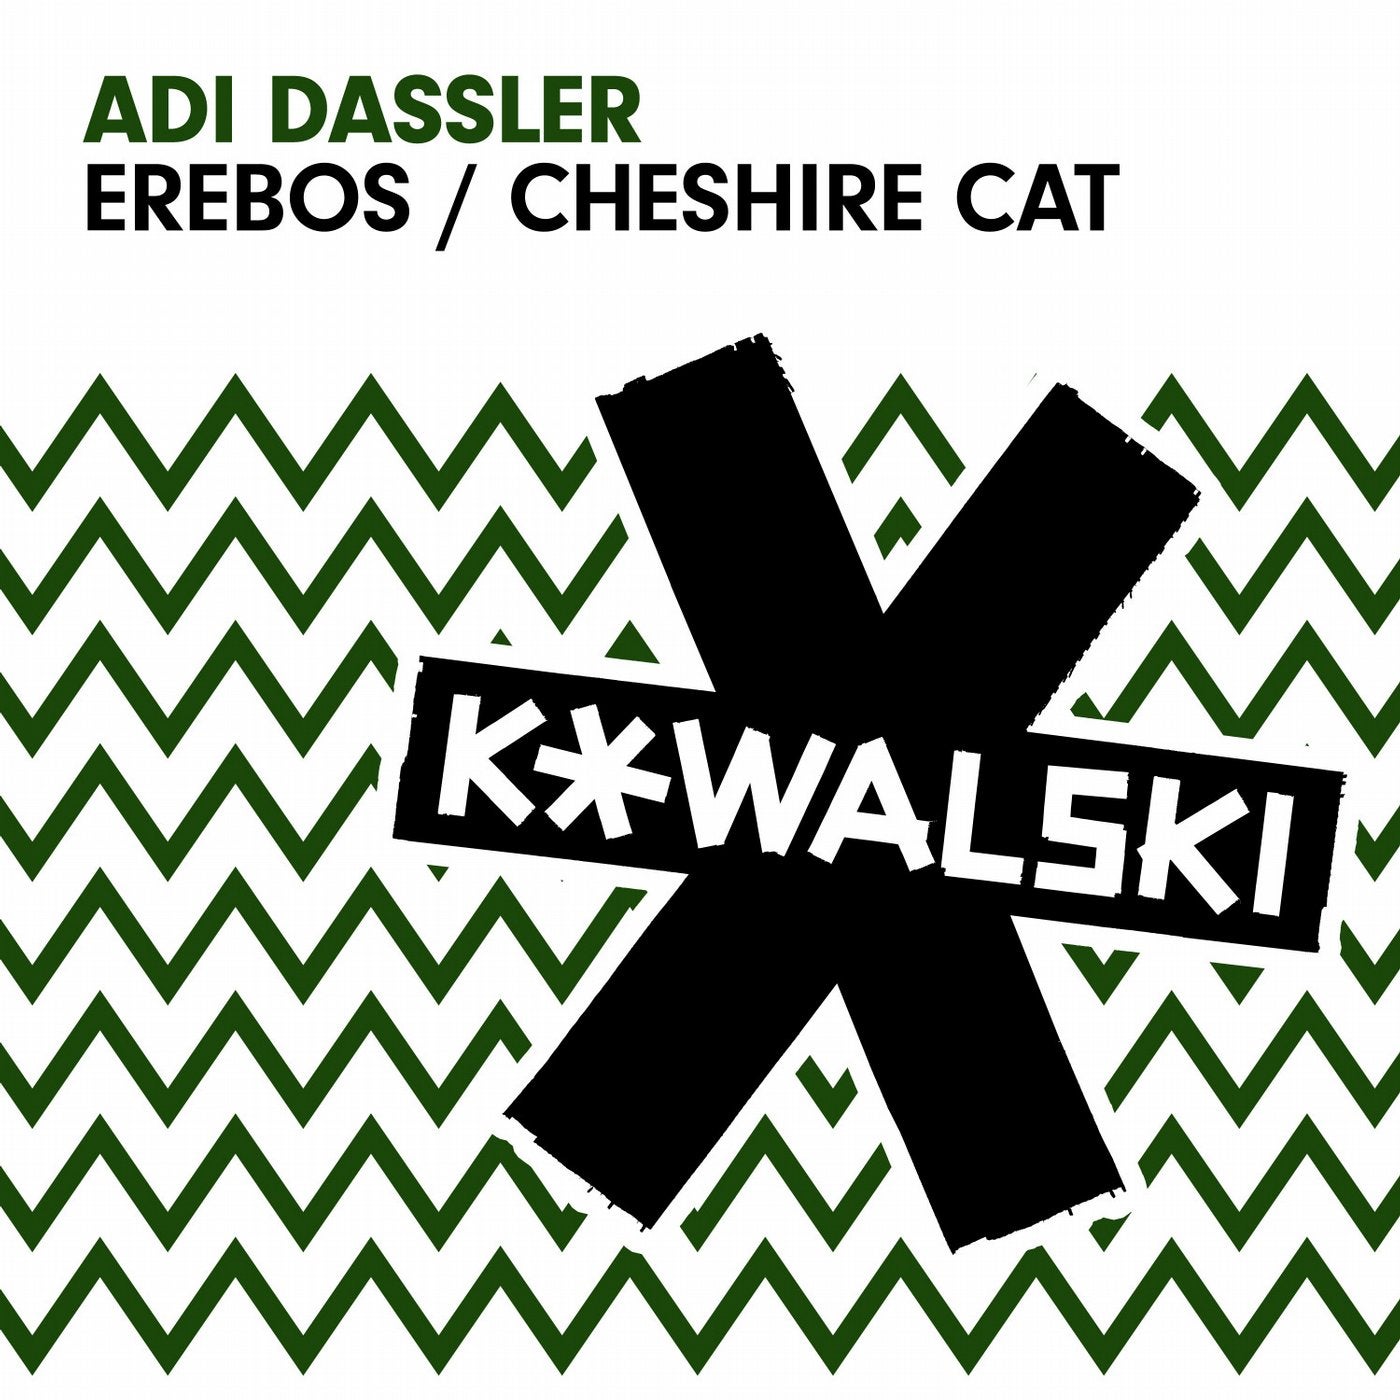 Erebos / Cheshire Cat